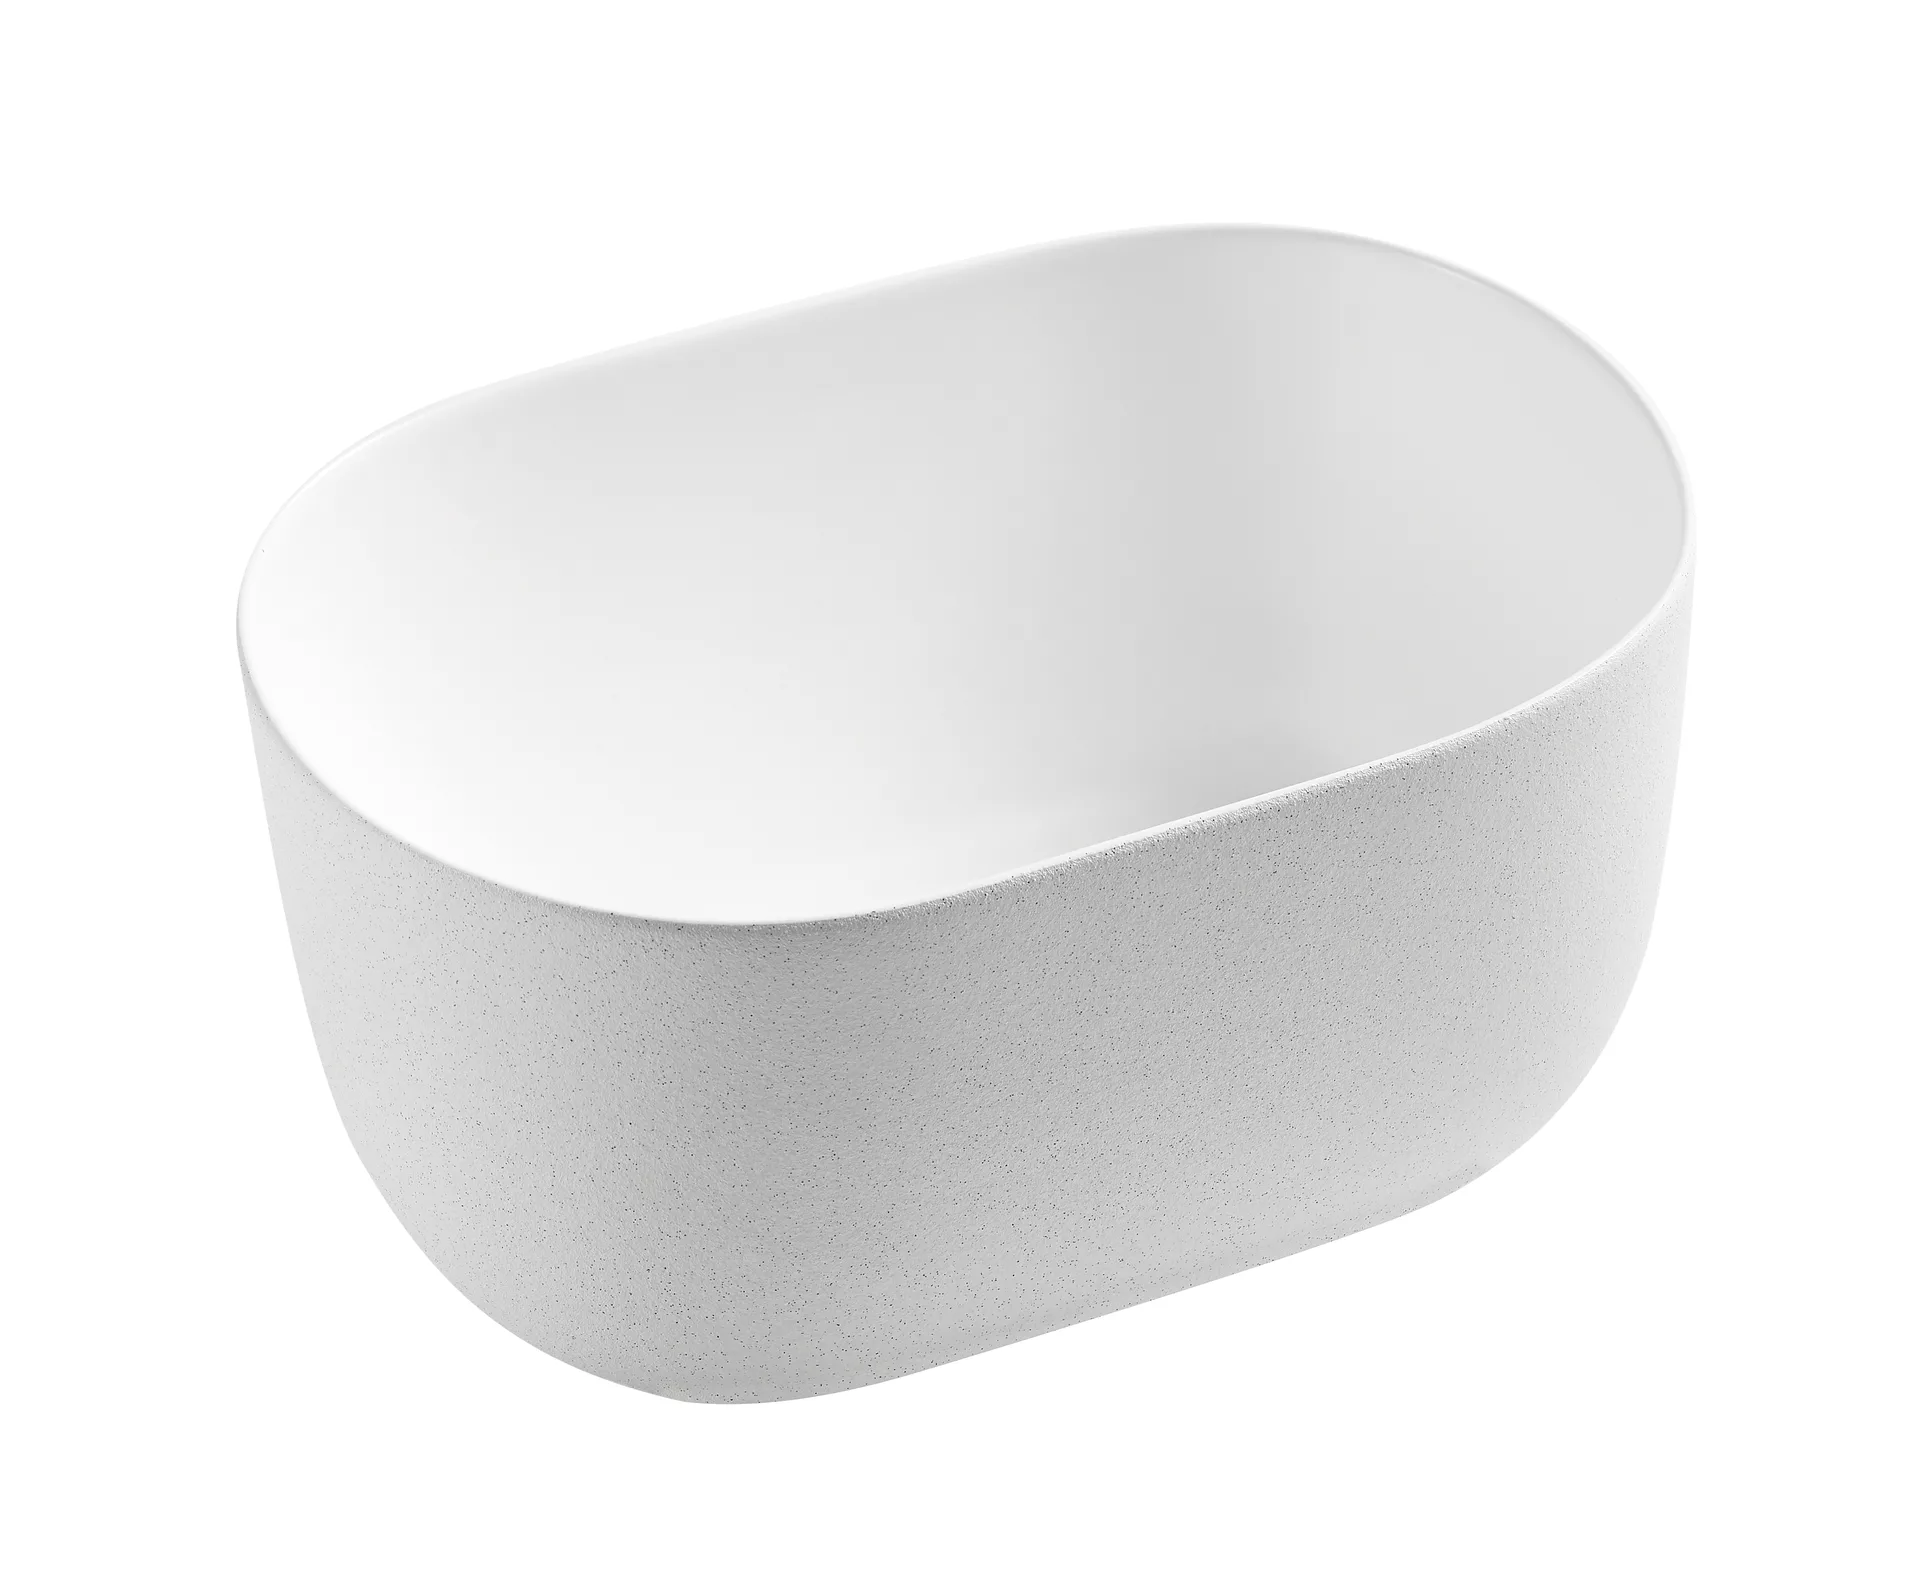 Накладная белая матовая раковина для ванной GiD N9302wg овальная керамическая